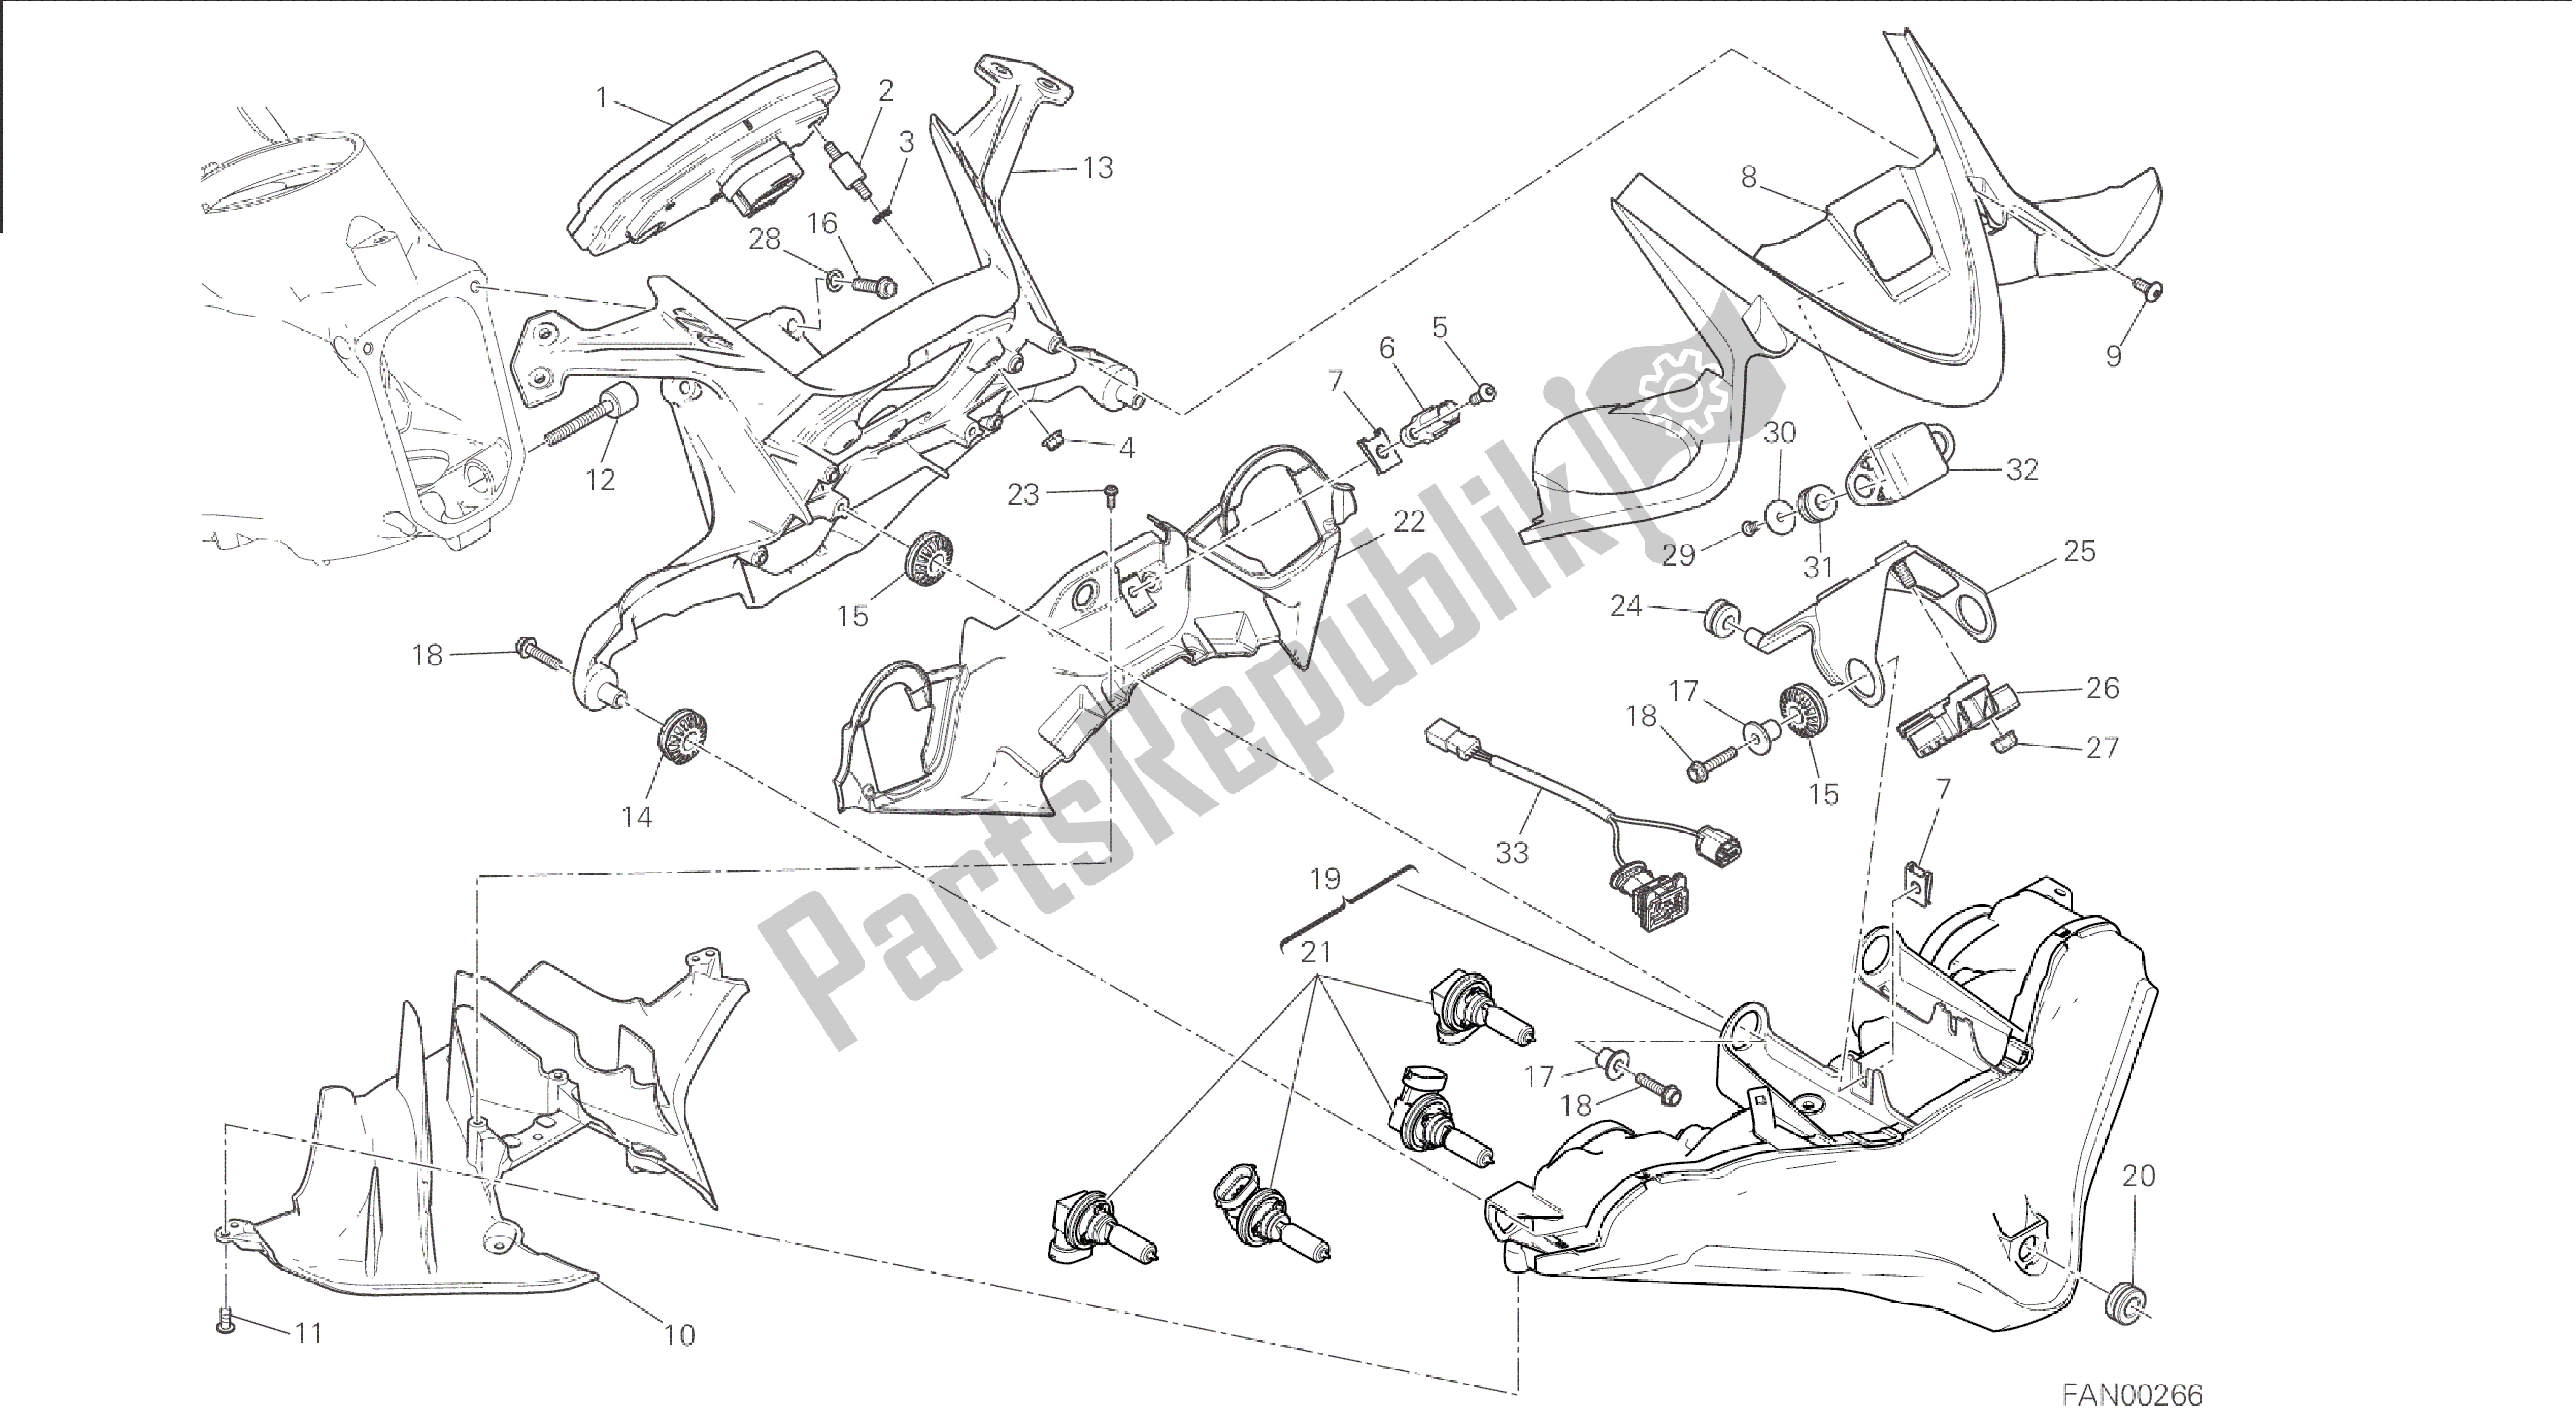 Todas las partes para Dibujo 020 - Fanale Anteriore E Cruscotto [mod: 1199r; Xst: Marco De Grupo Aus, Eur, Fra, Jap, Twn] de Ducati Panigale 1198 2015